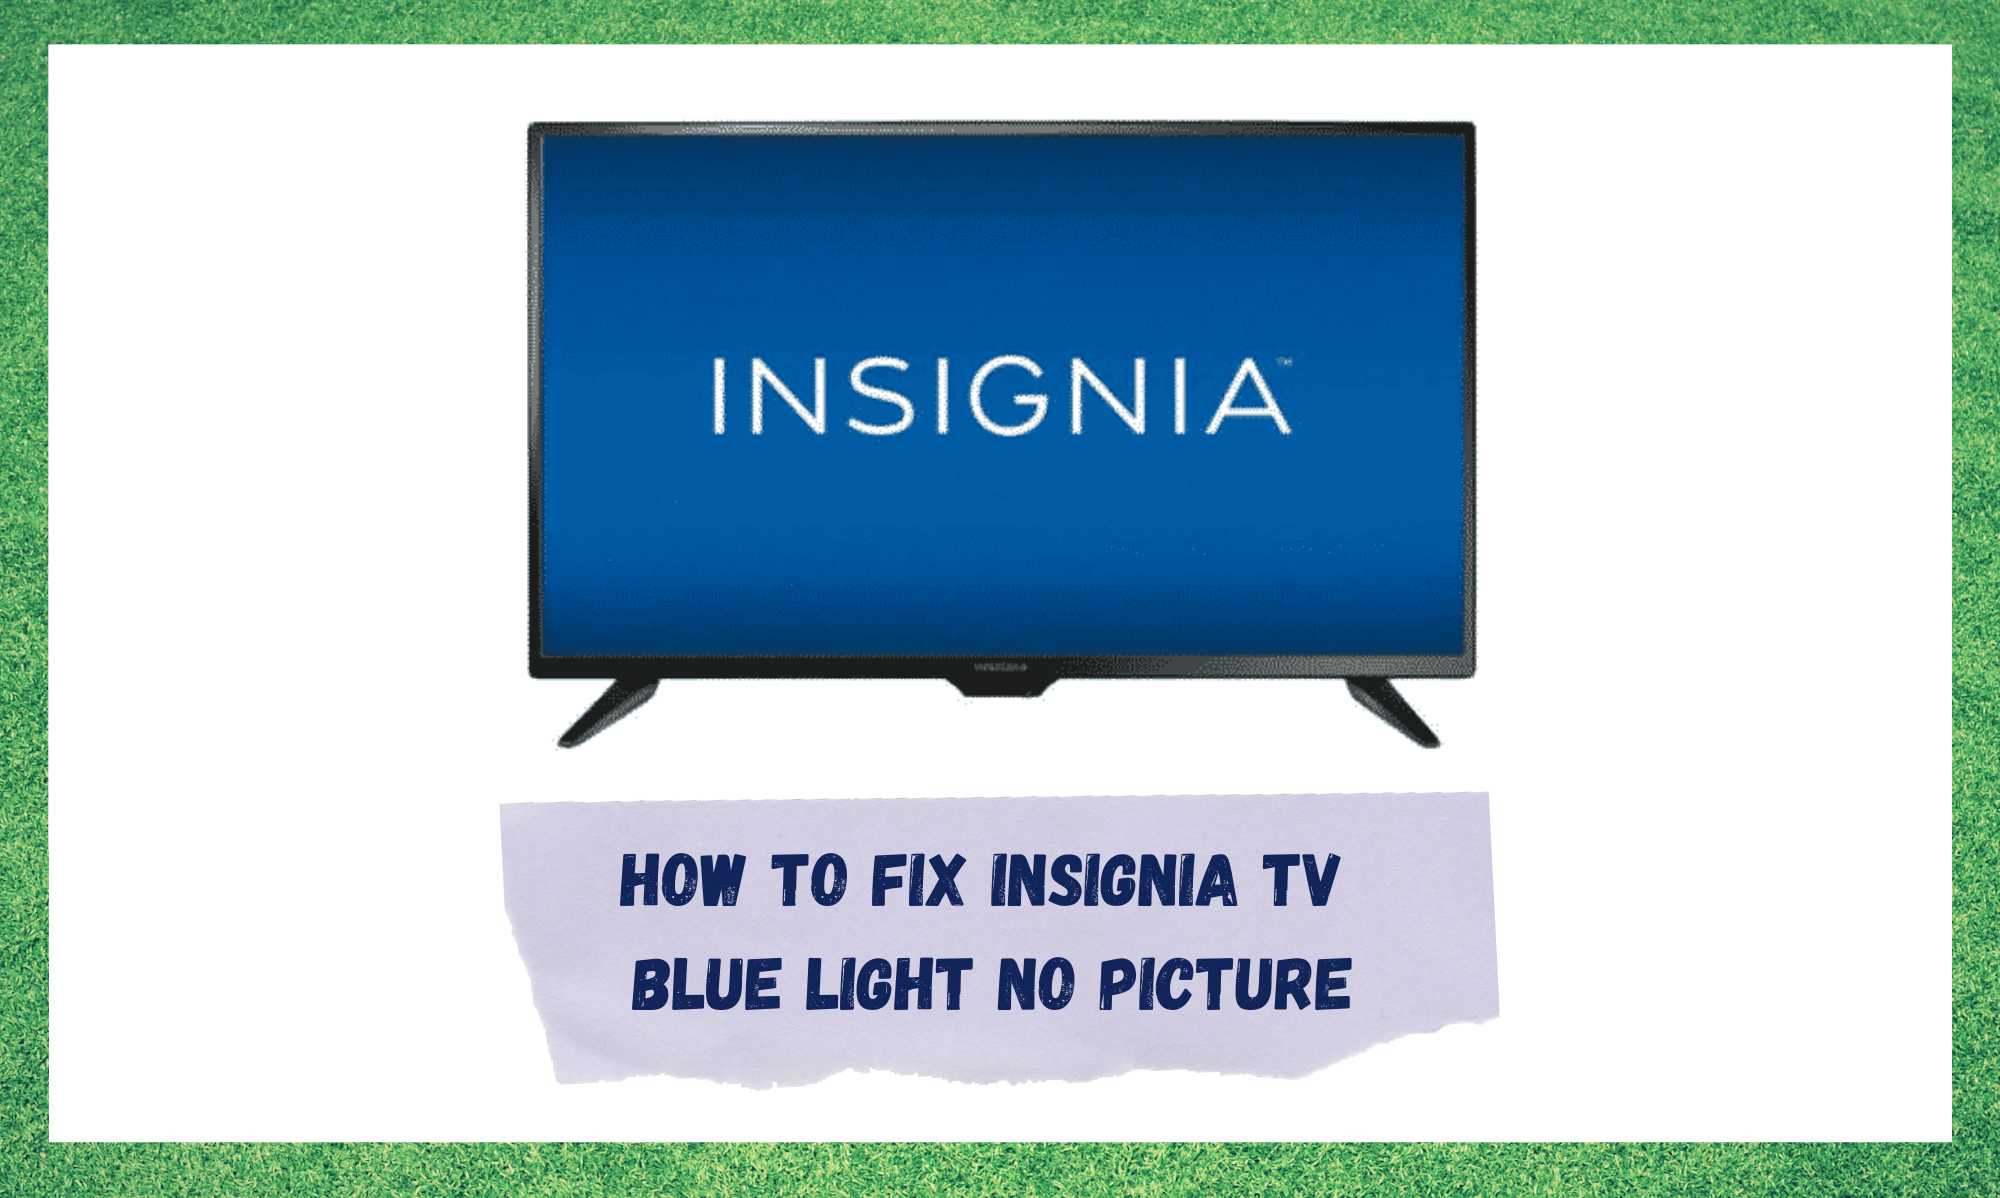 Modré svetlo televízora Insignia bez obrazu: 3 spôsoby opravy